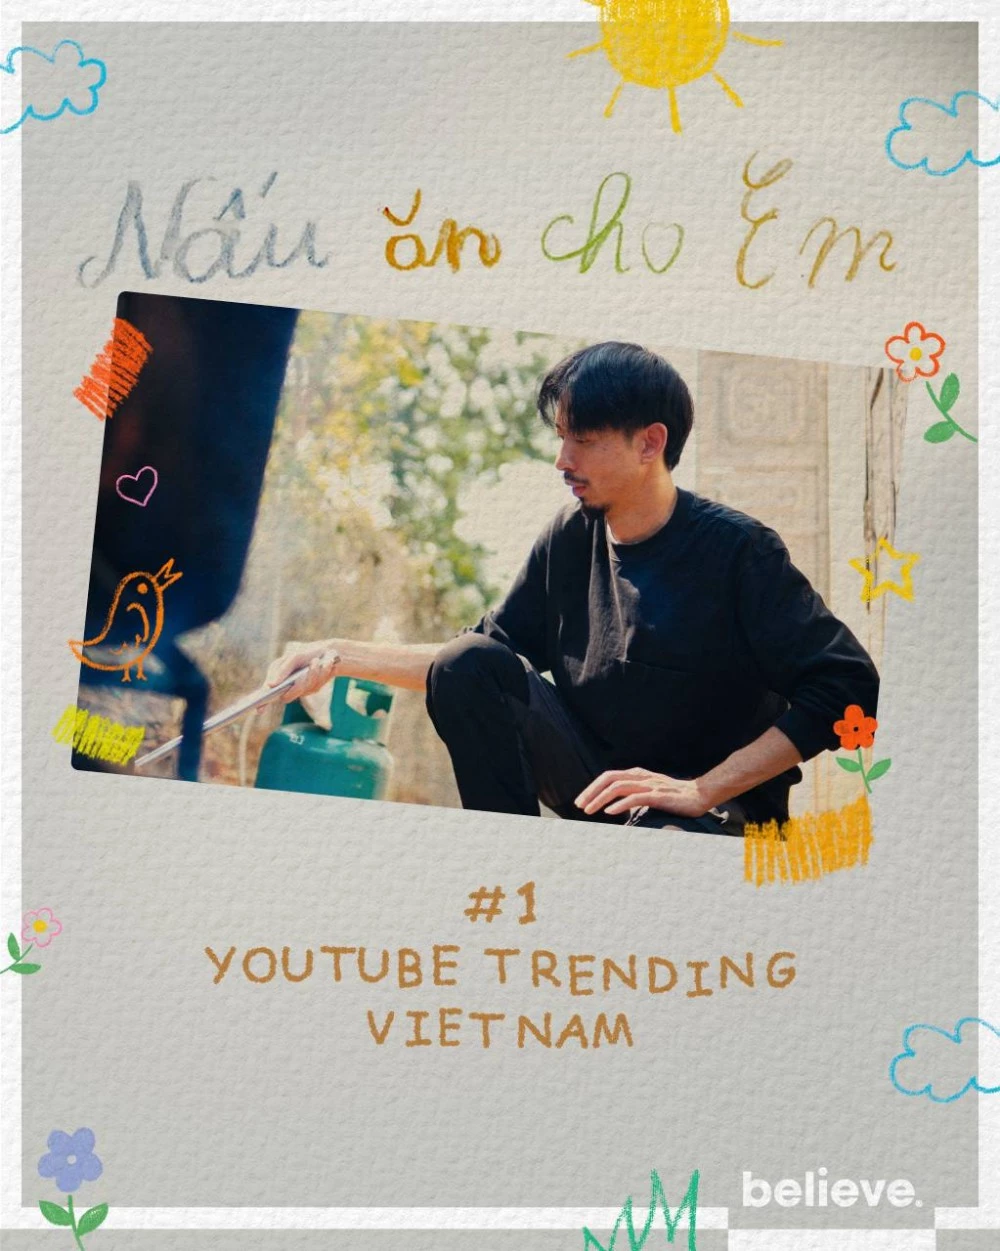 Nấu Ăn Cho Em trở thành MV thứ 16 của Đen giành Top 1 Trending YouTube 